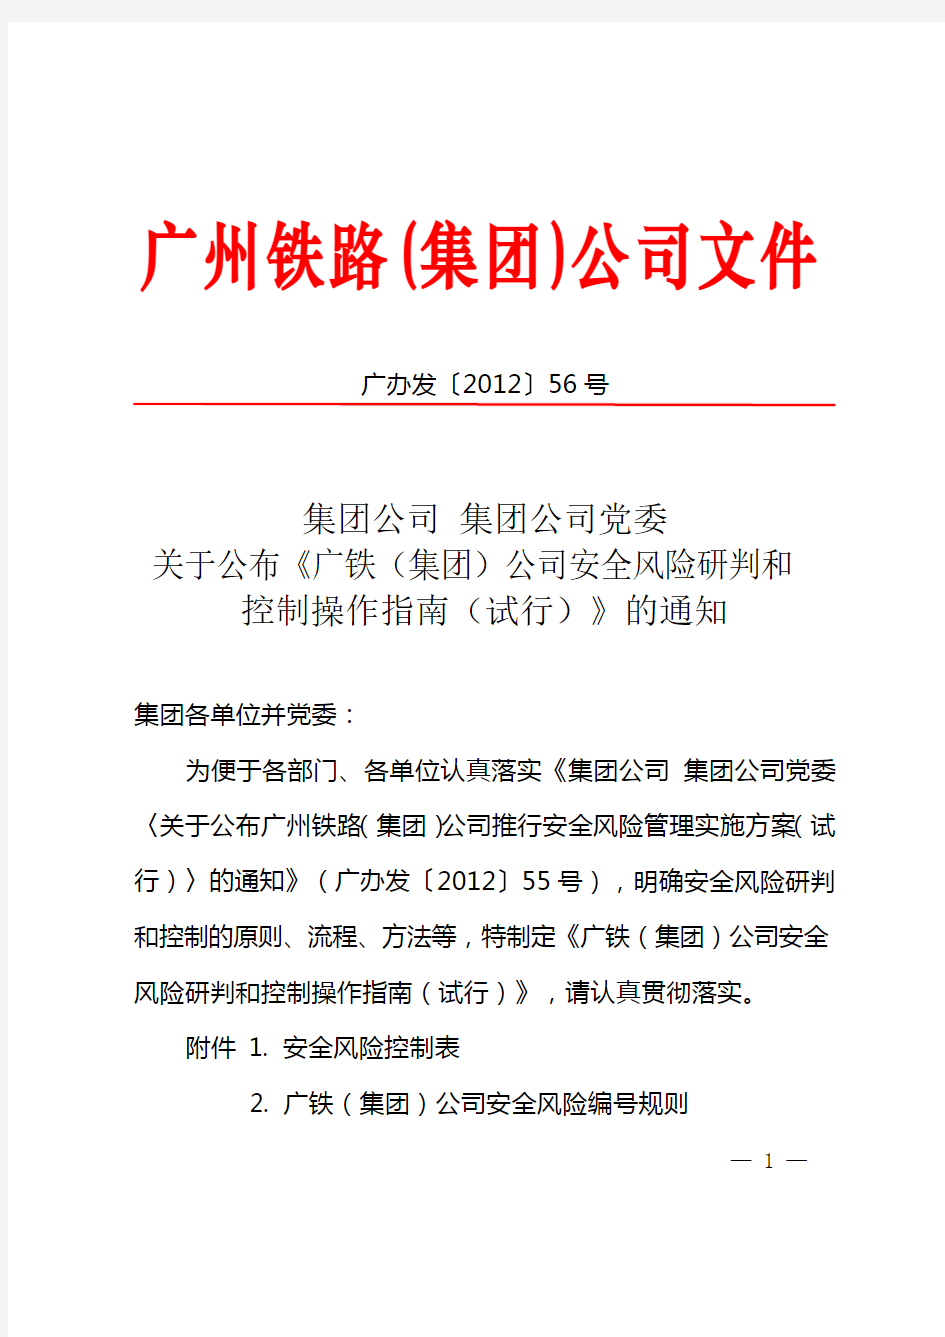 集团公司集团公司党委关于公布《广铁(集团)公司安全风险研判和控制操作指南(试行)》